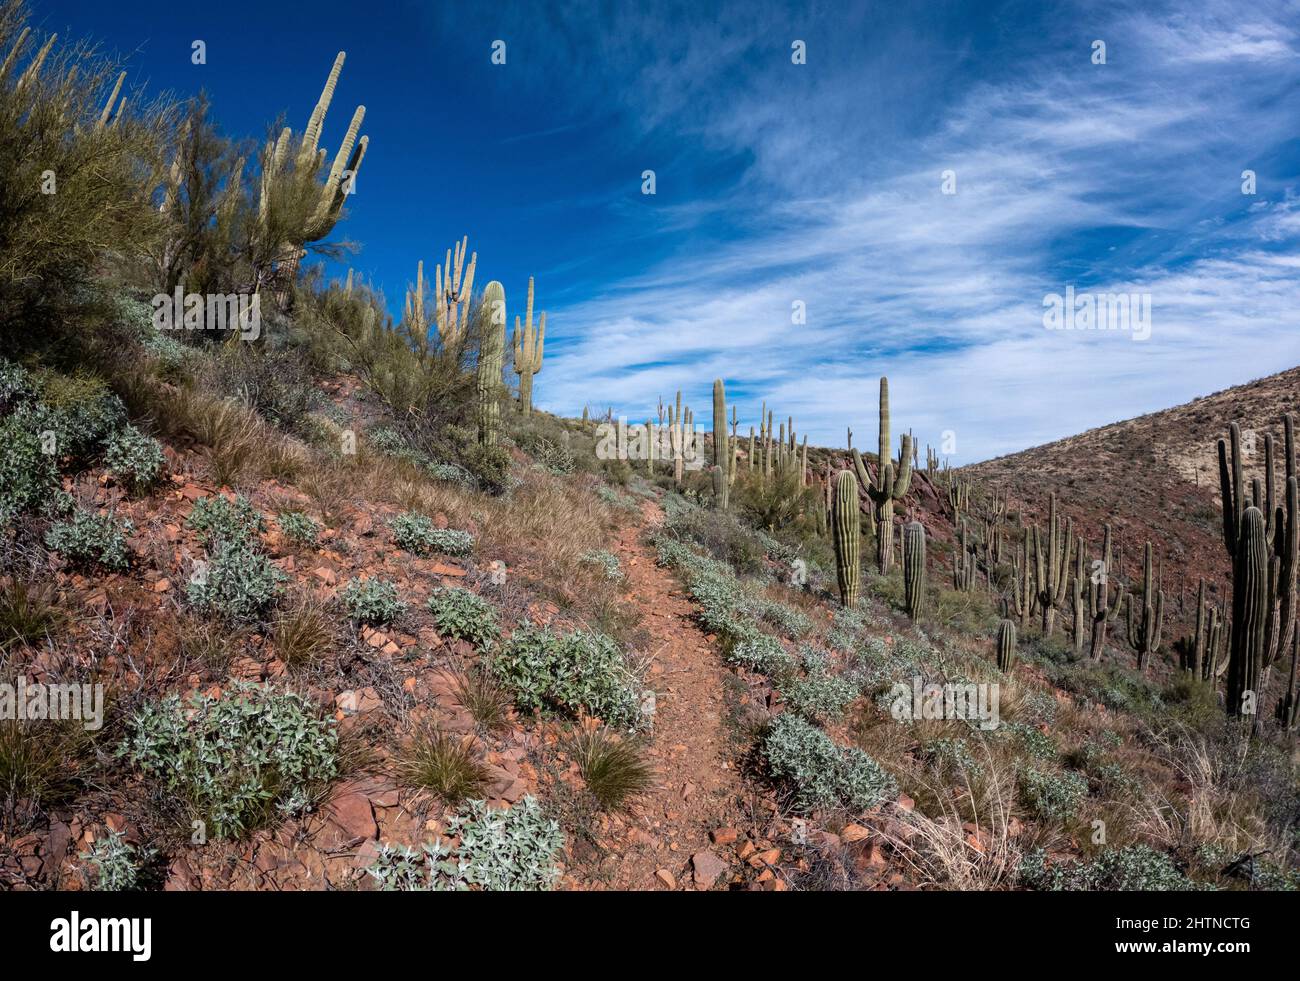 Sentiero escursionistico sterrato in salita attraverso il deserto con cactus saguaro su entrambi i lati. Foto Stock